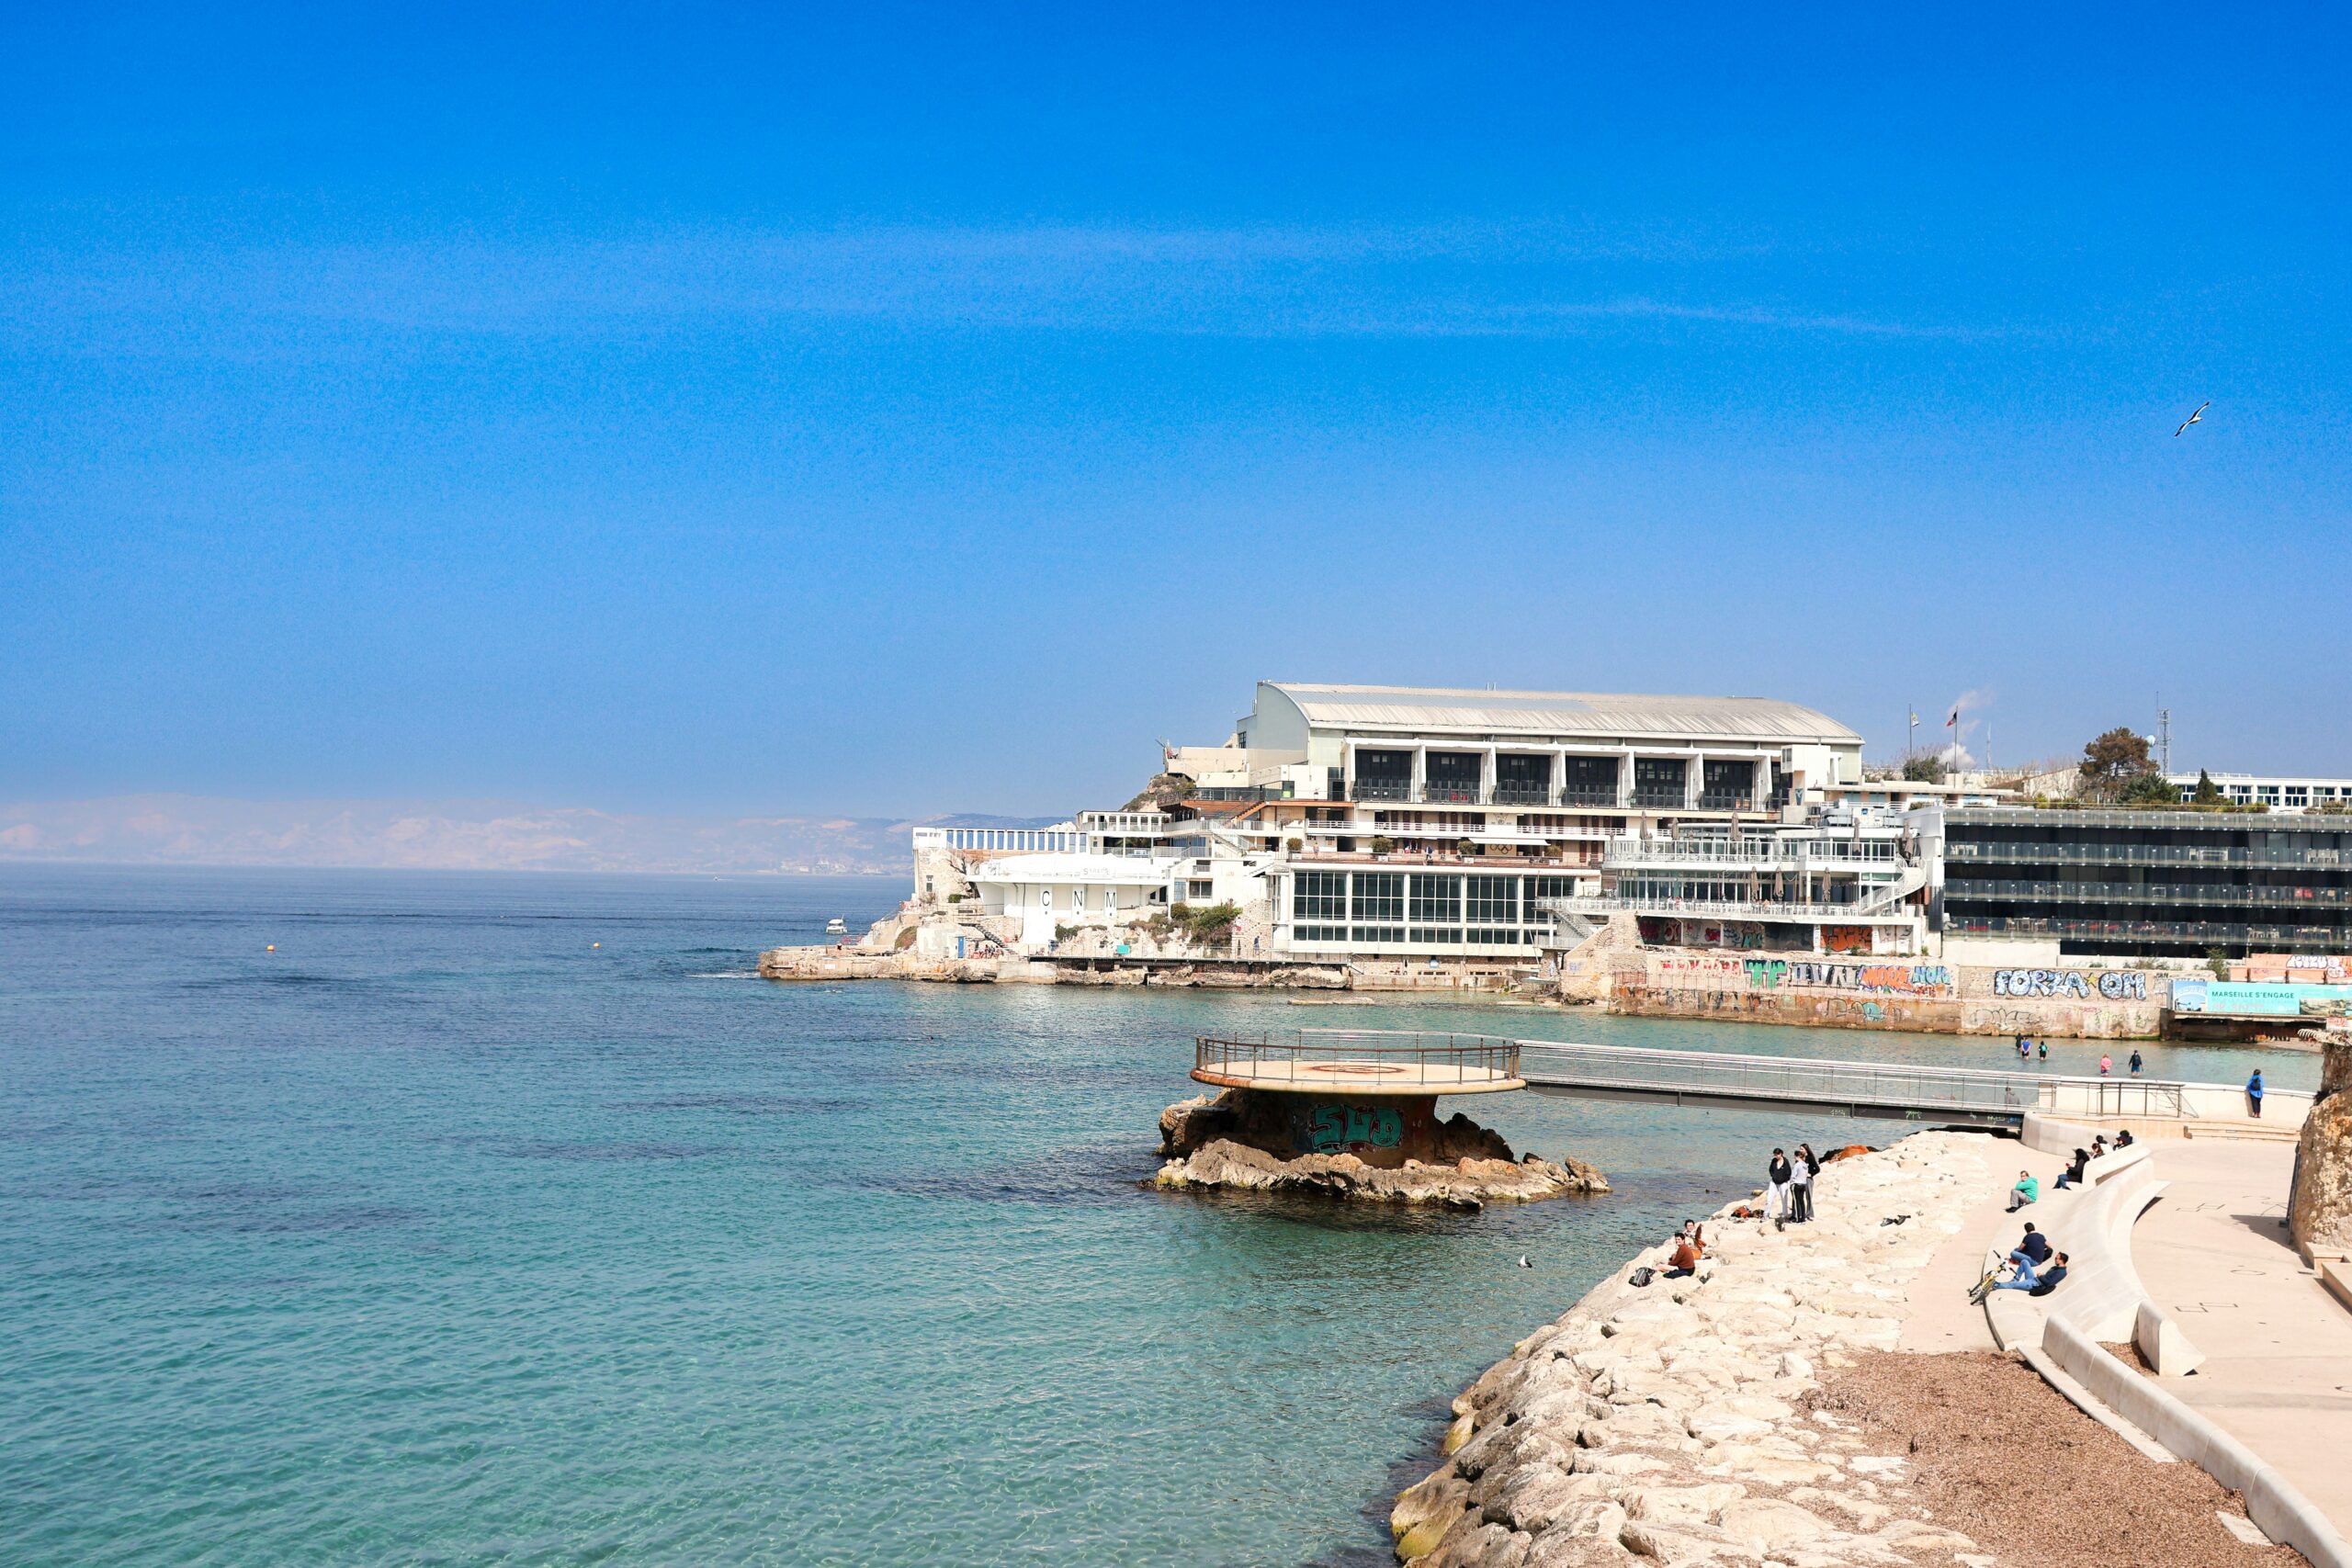 découvrez un séjour inoubliable dans un hôtel de luxe à marseille. profitez d'un service haut de gamme, de prestations exceptionnelles et d'une vue imprenable sur la ville et la mer méditerranée.